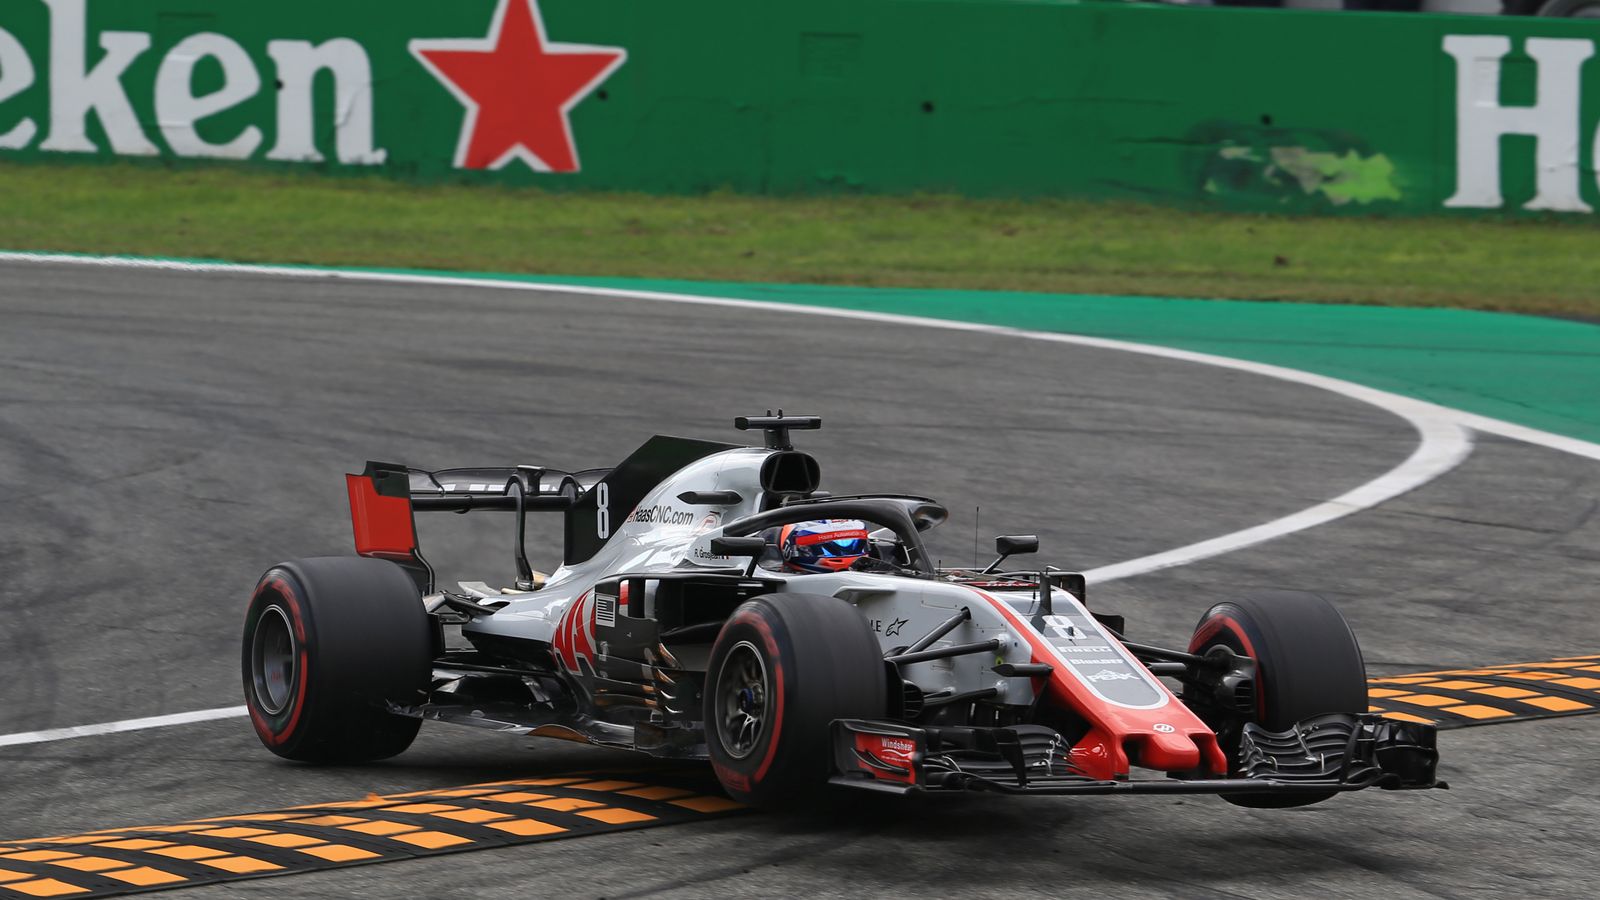 Formel 1: Grosjean in Monza disqualifiziert | Formel 1 ...